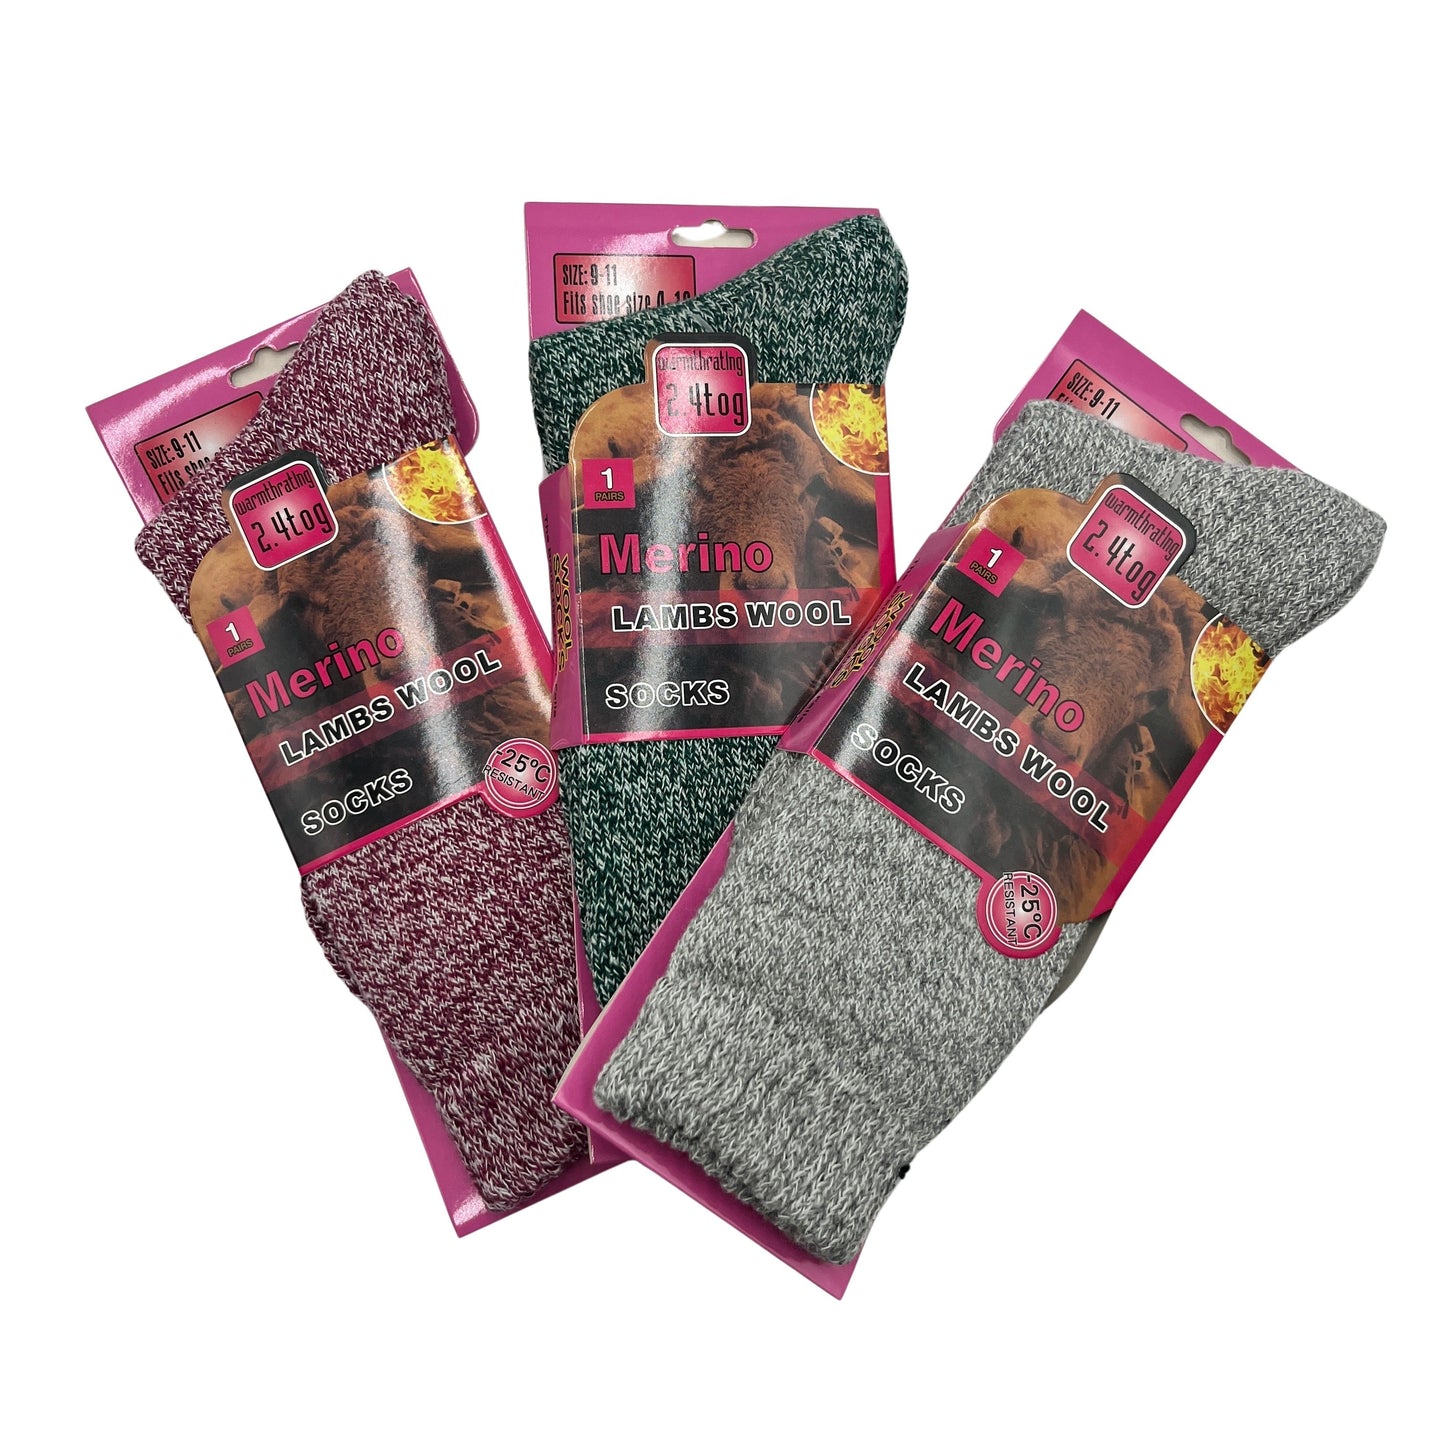 Heated Ladies Socks - 1/pack